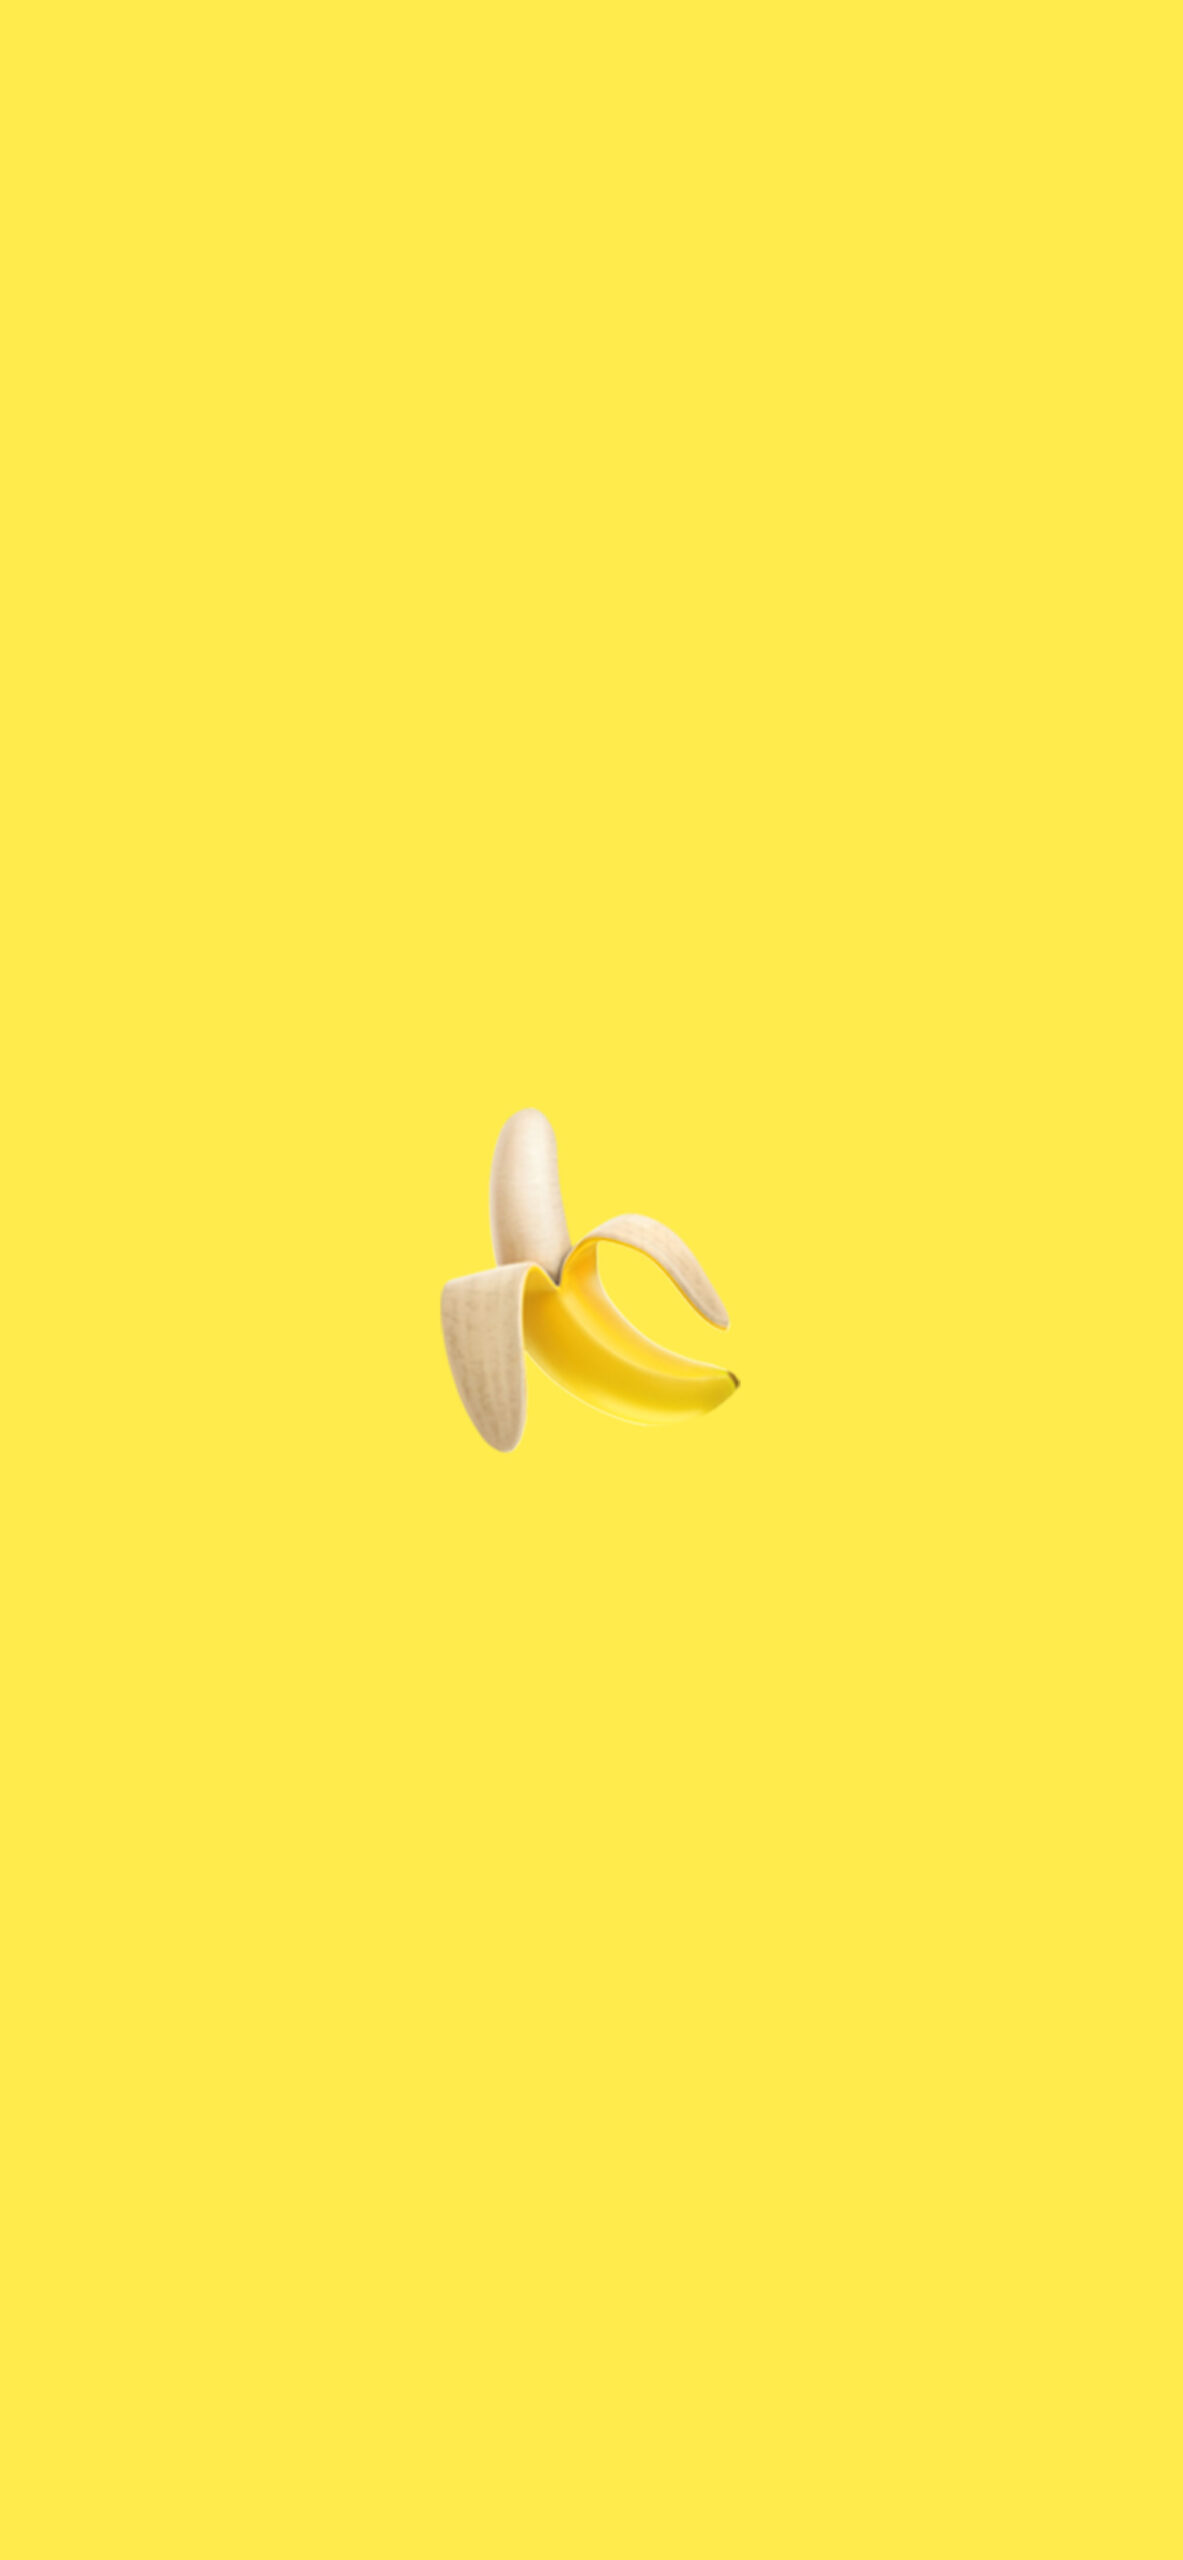 banana emoji aesthetic wallpaper